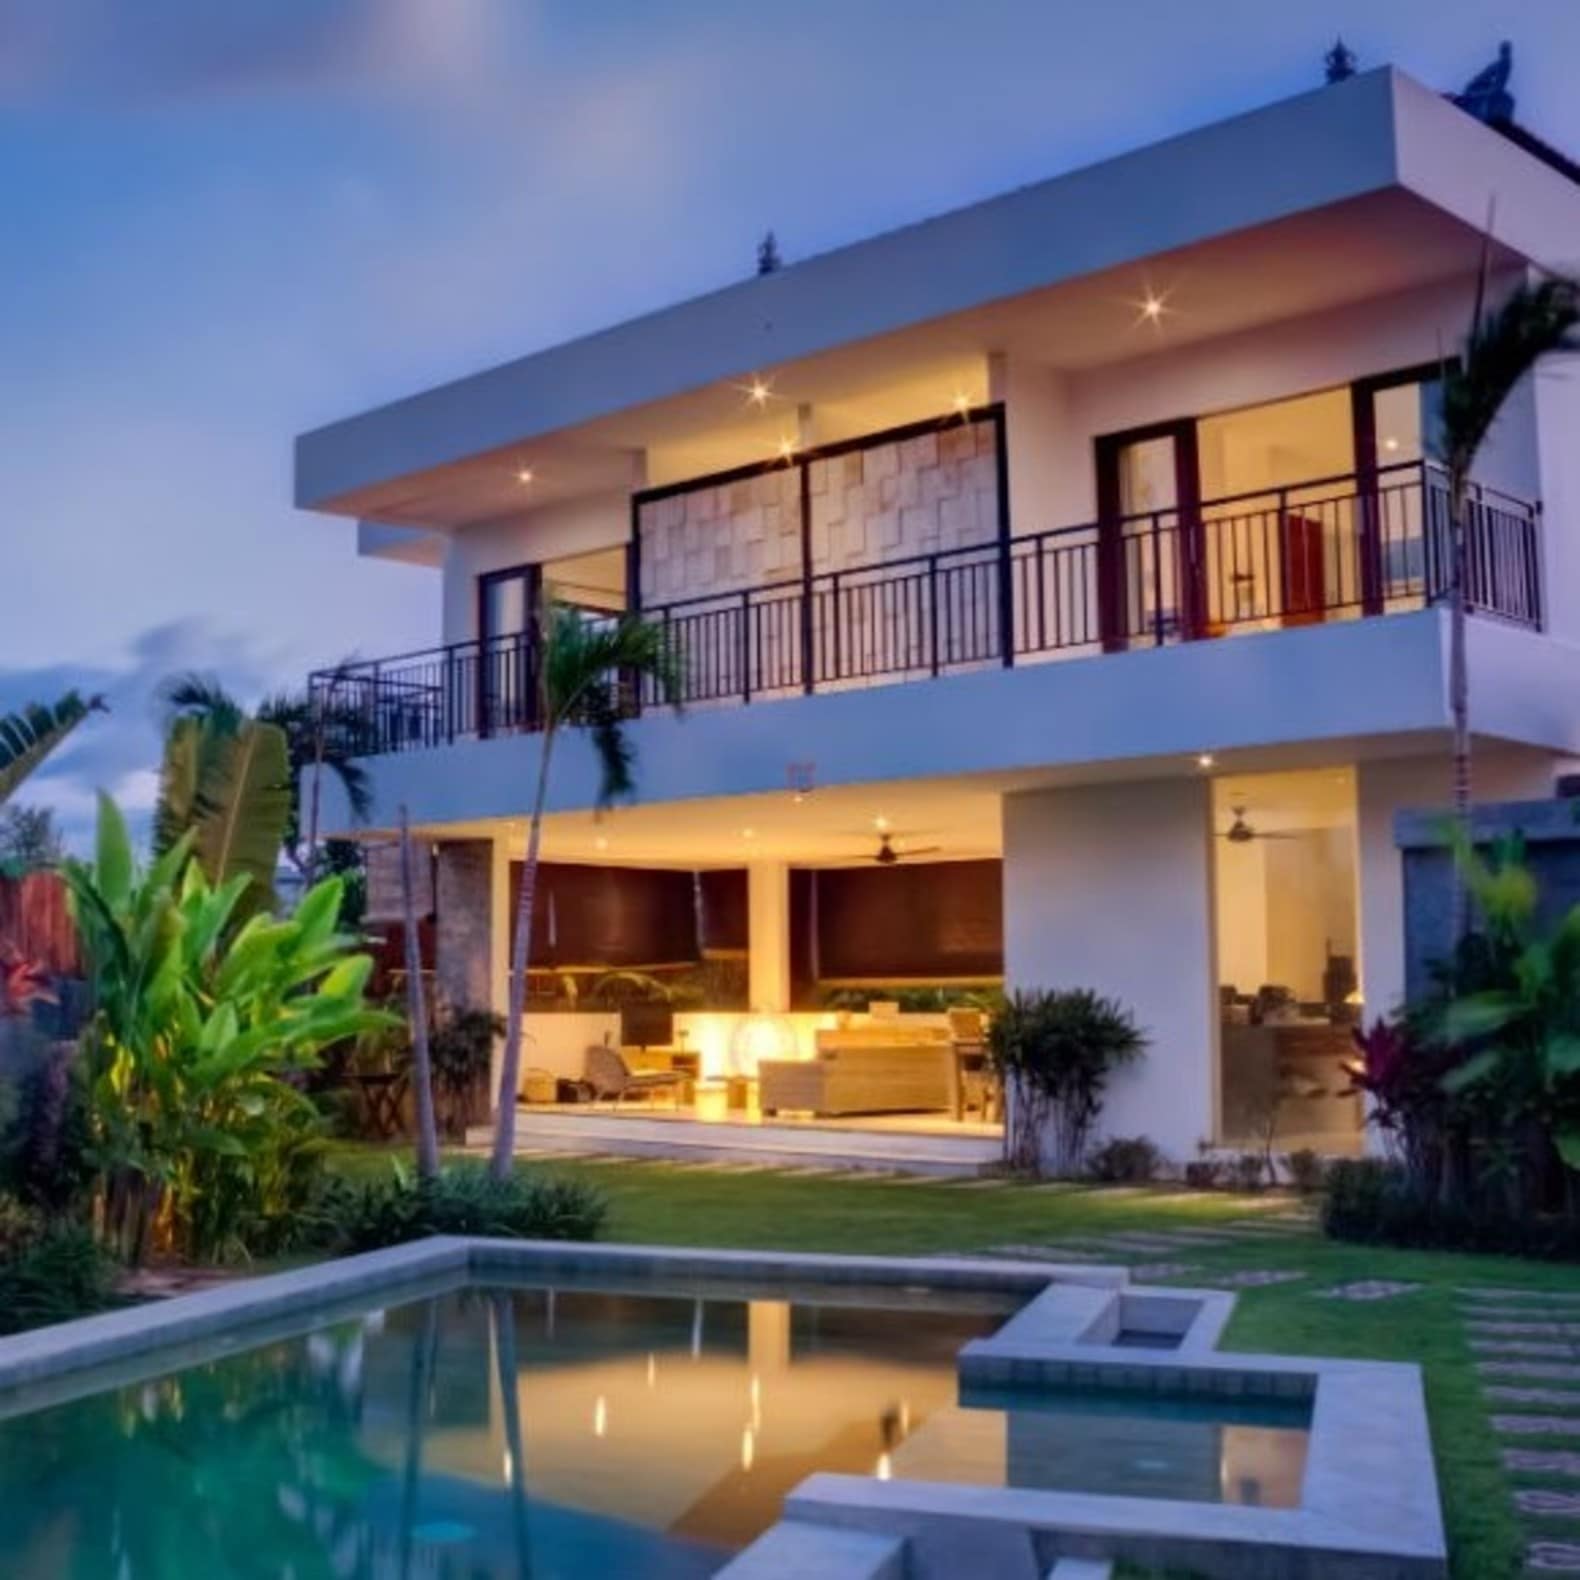 Villa avec piscine, palmiers, arbustes tropicaux, terrasse couverte, villa Guadeloupe